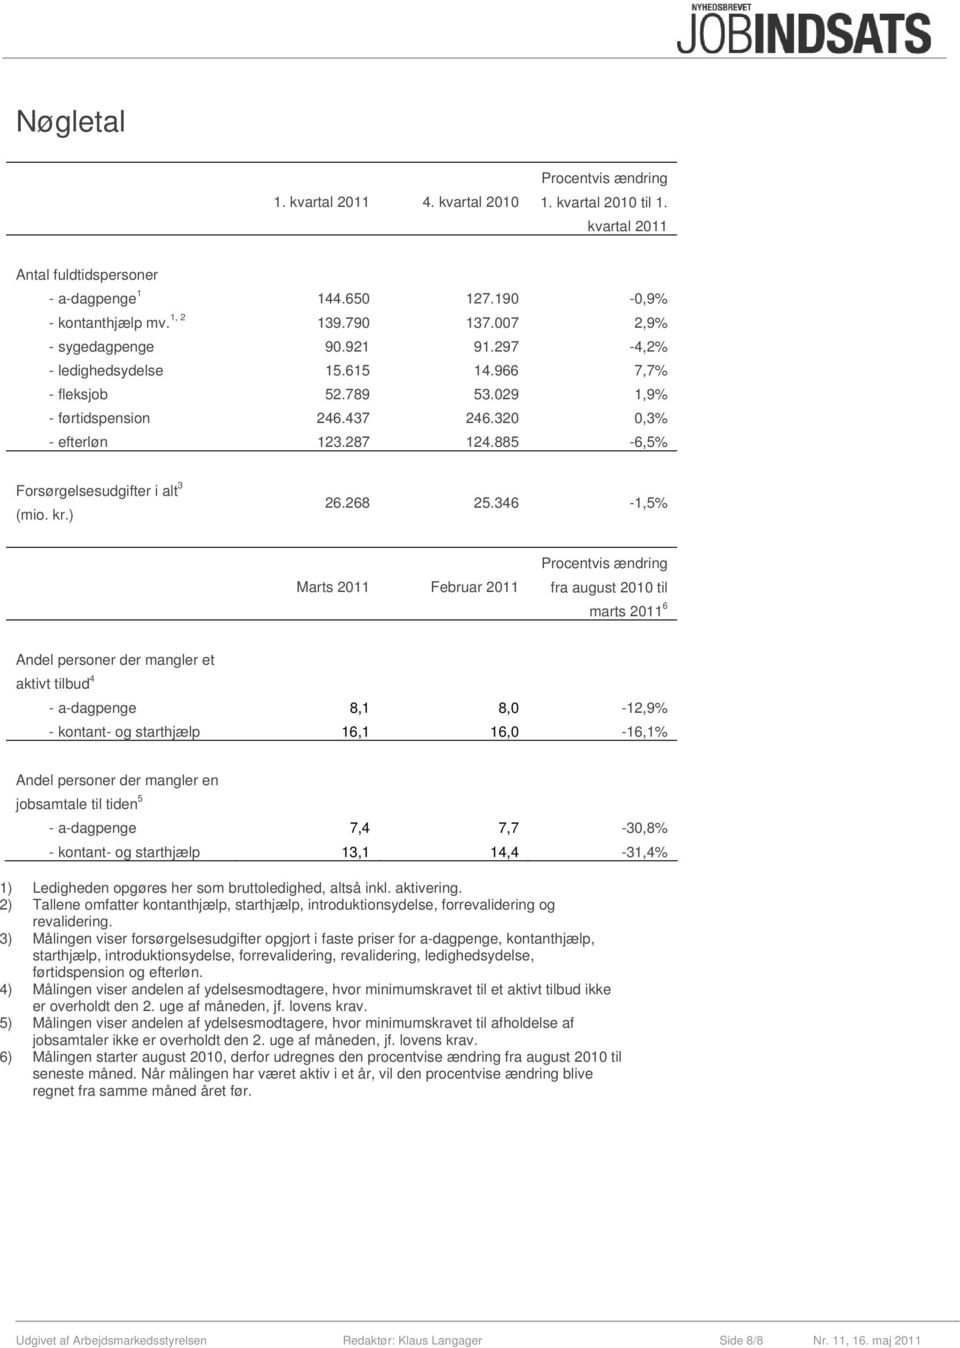 885-6,5% Forsørgelsesudgifter i alt 3 (mio. kr.) 26.268 25.